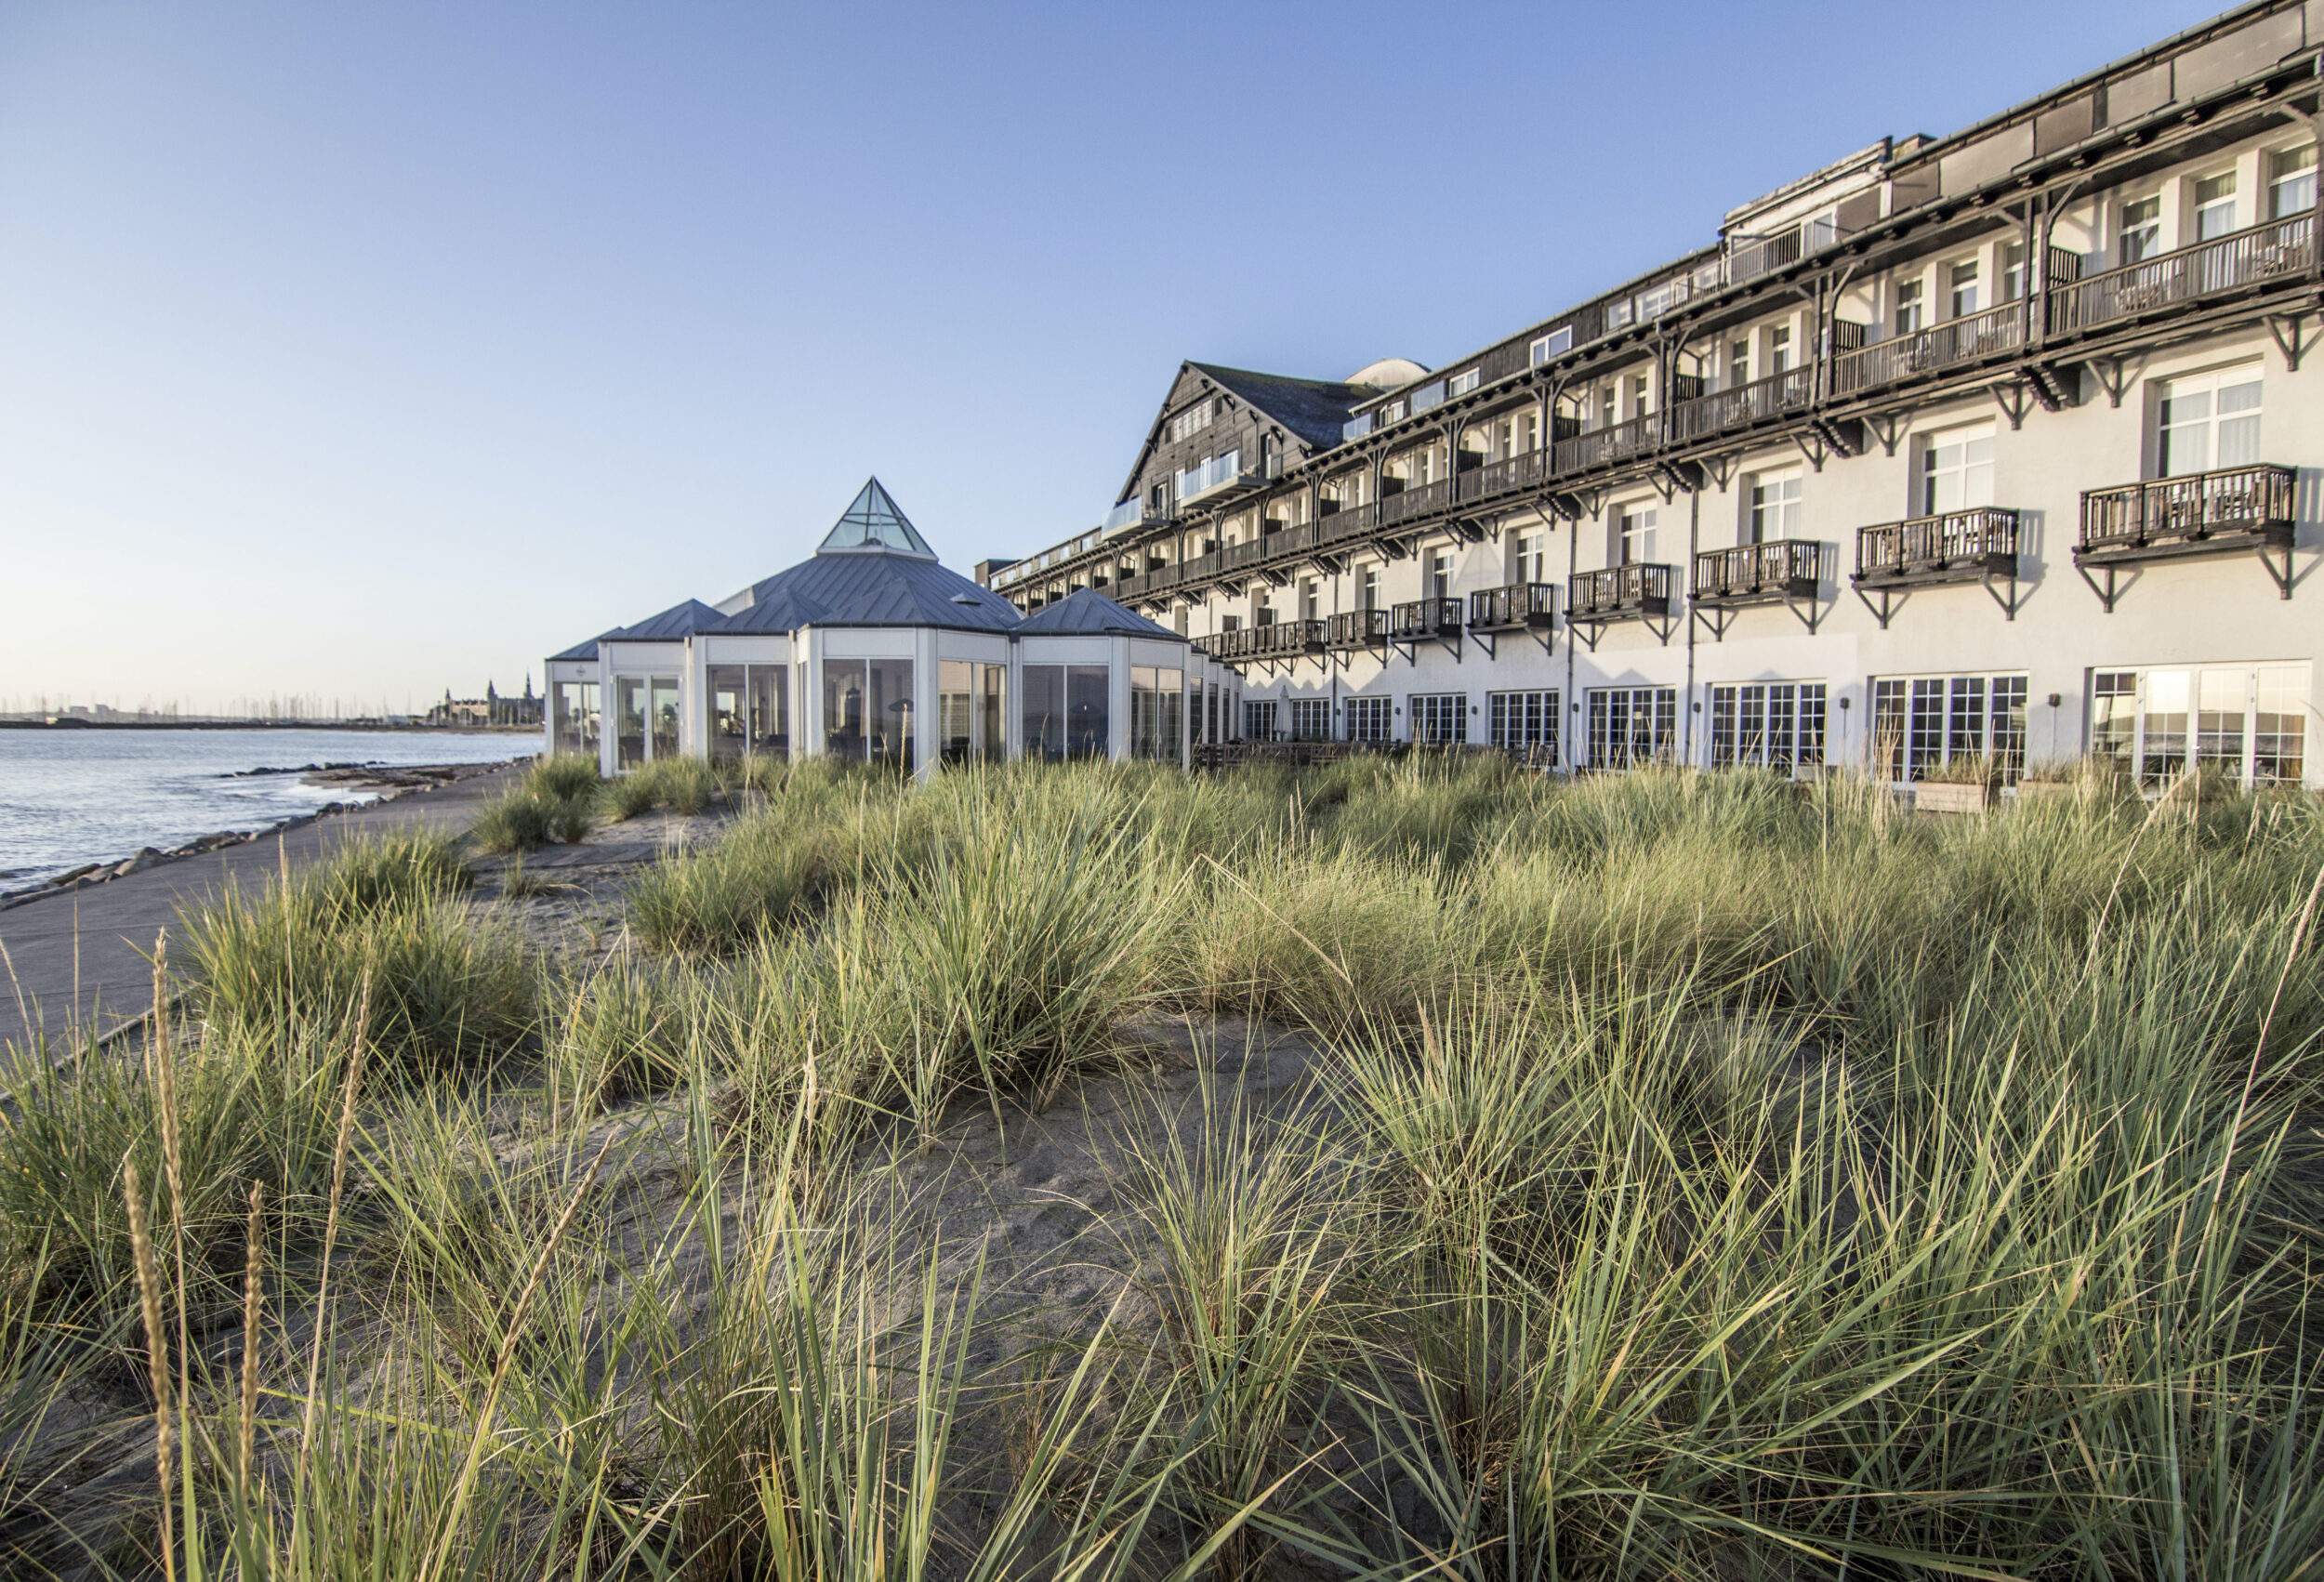 Marienlyst Strandhotel satser stort på fremtiden: Ny millioninvestering skal positionere hotellet og skabe flere oplevelser for gæsterne